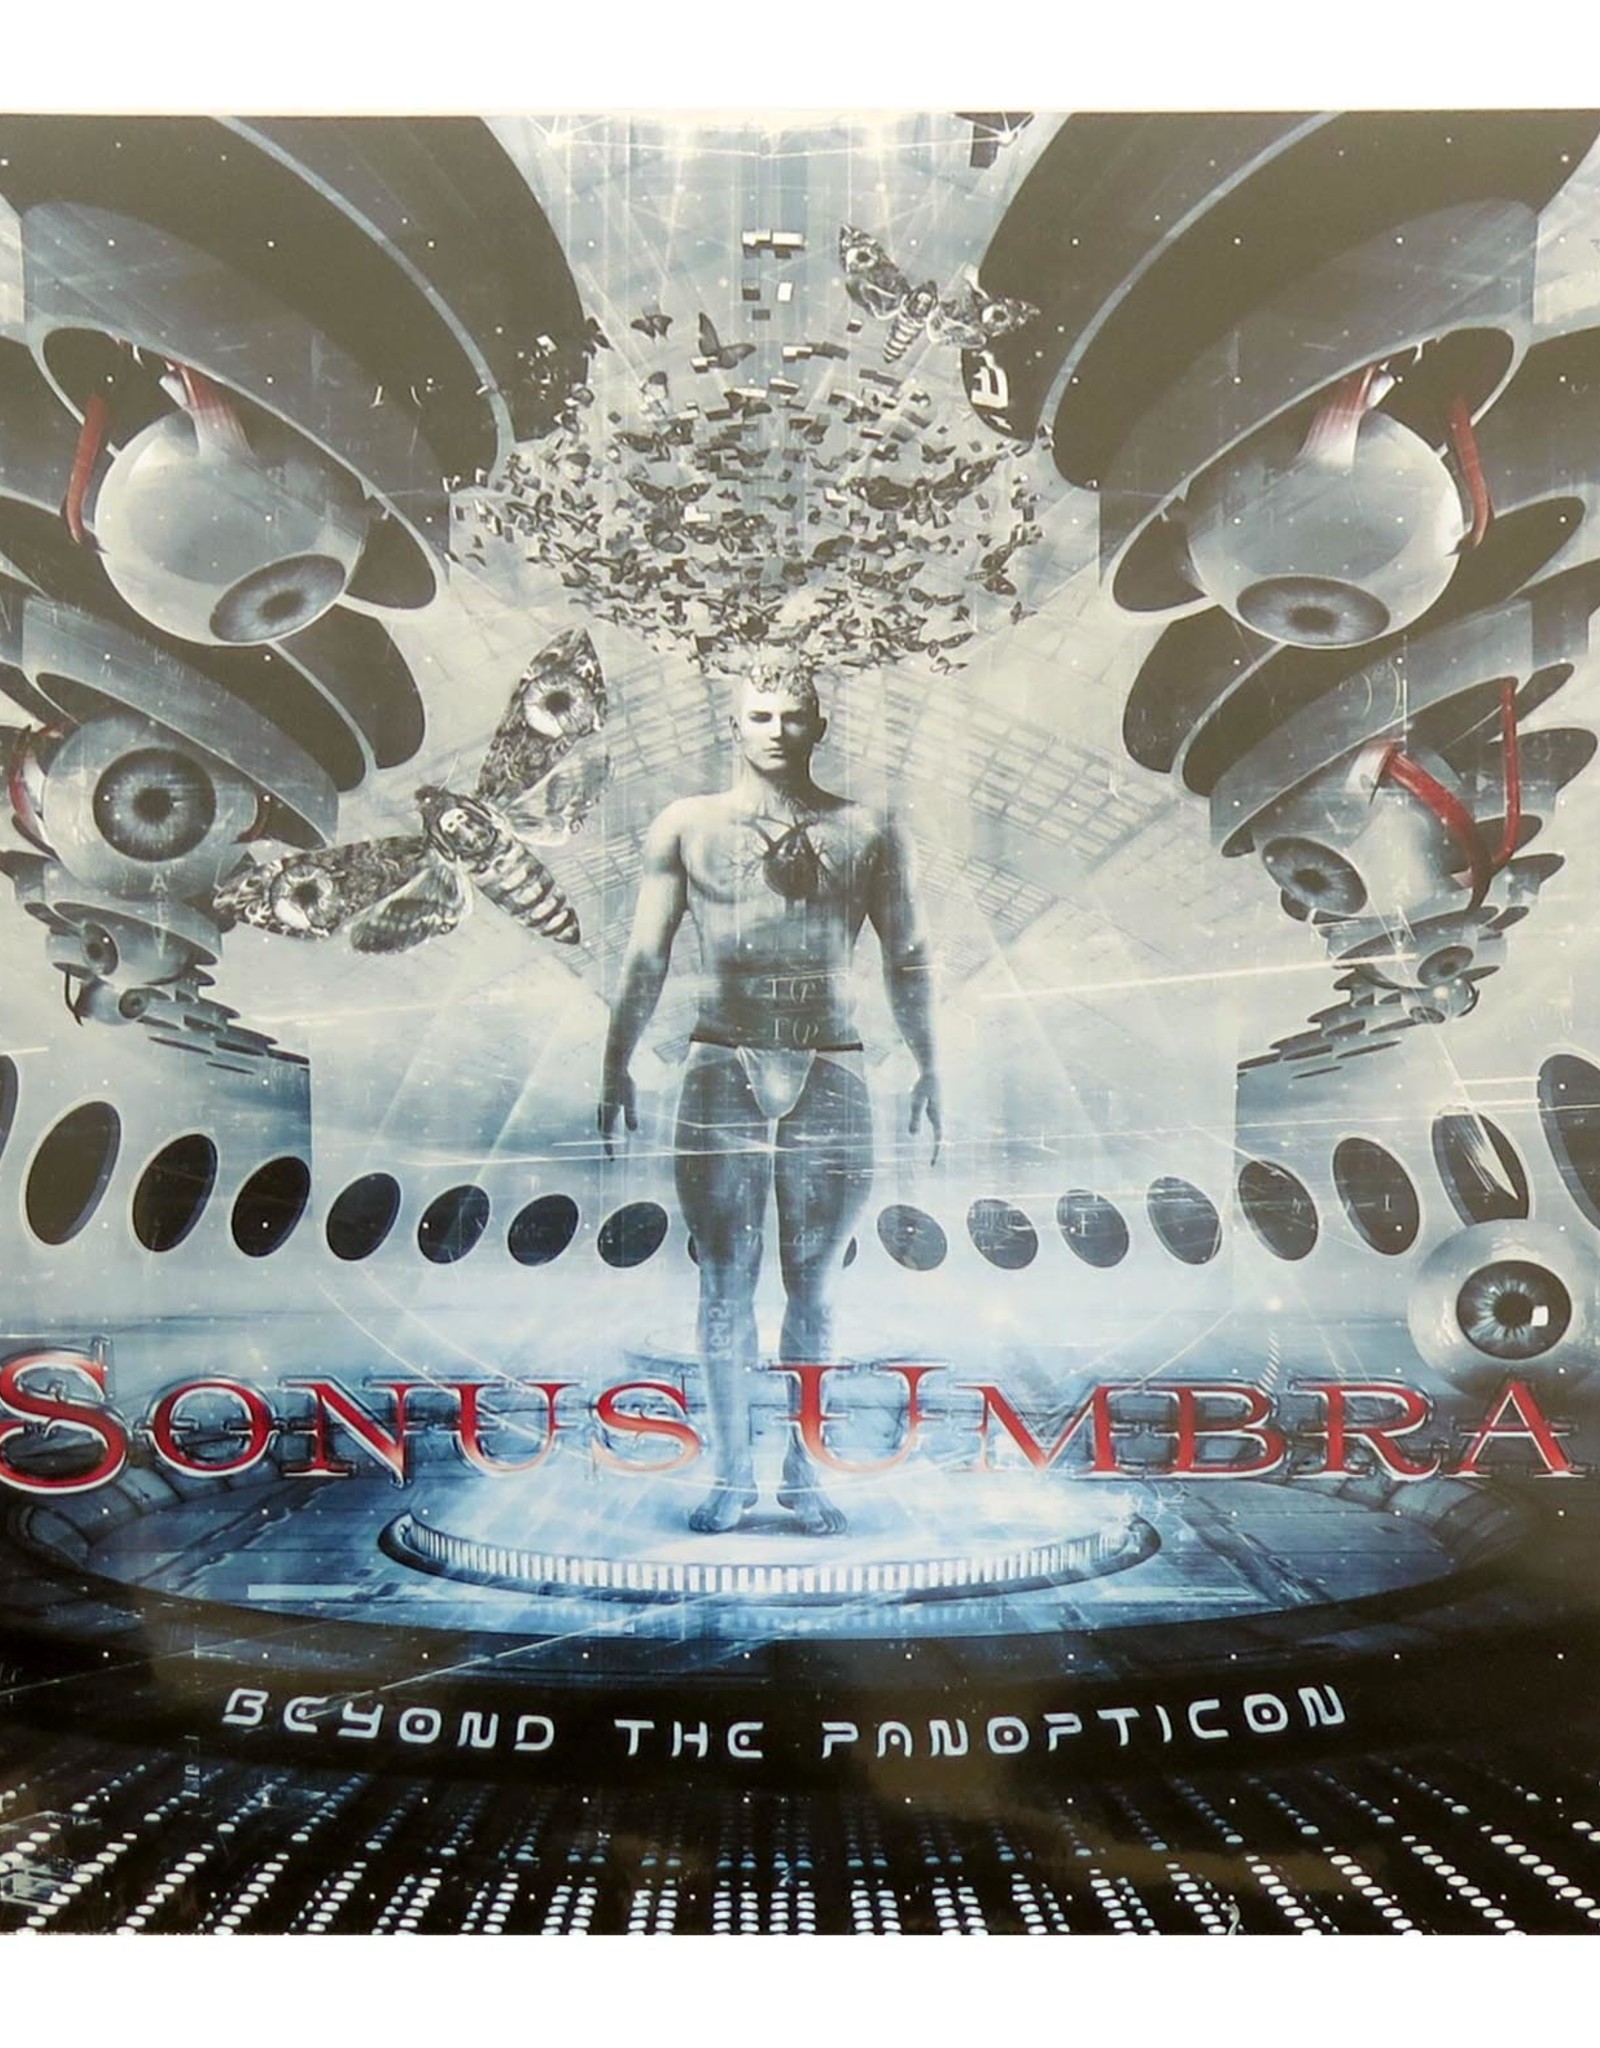 Sonus Umbra “Beyond The Panopticon”, LP, Sonus Umbra